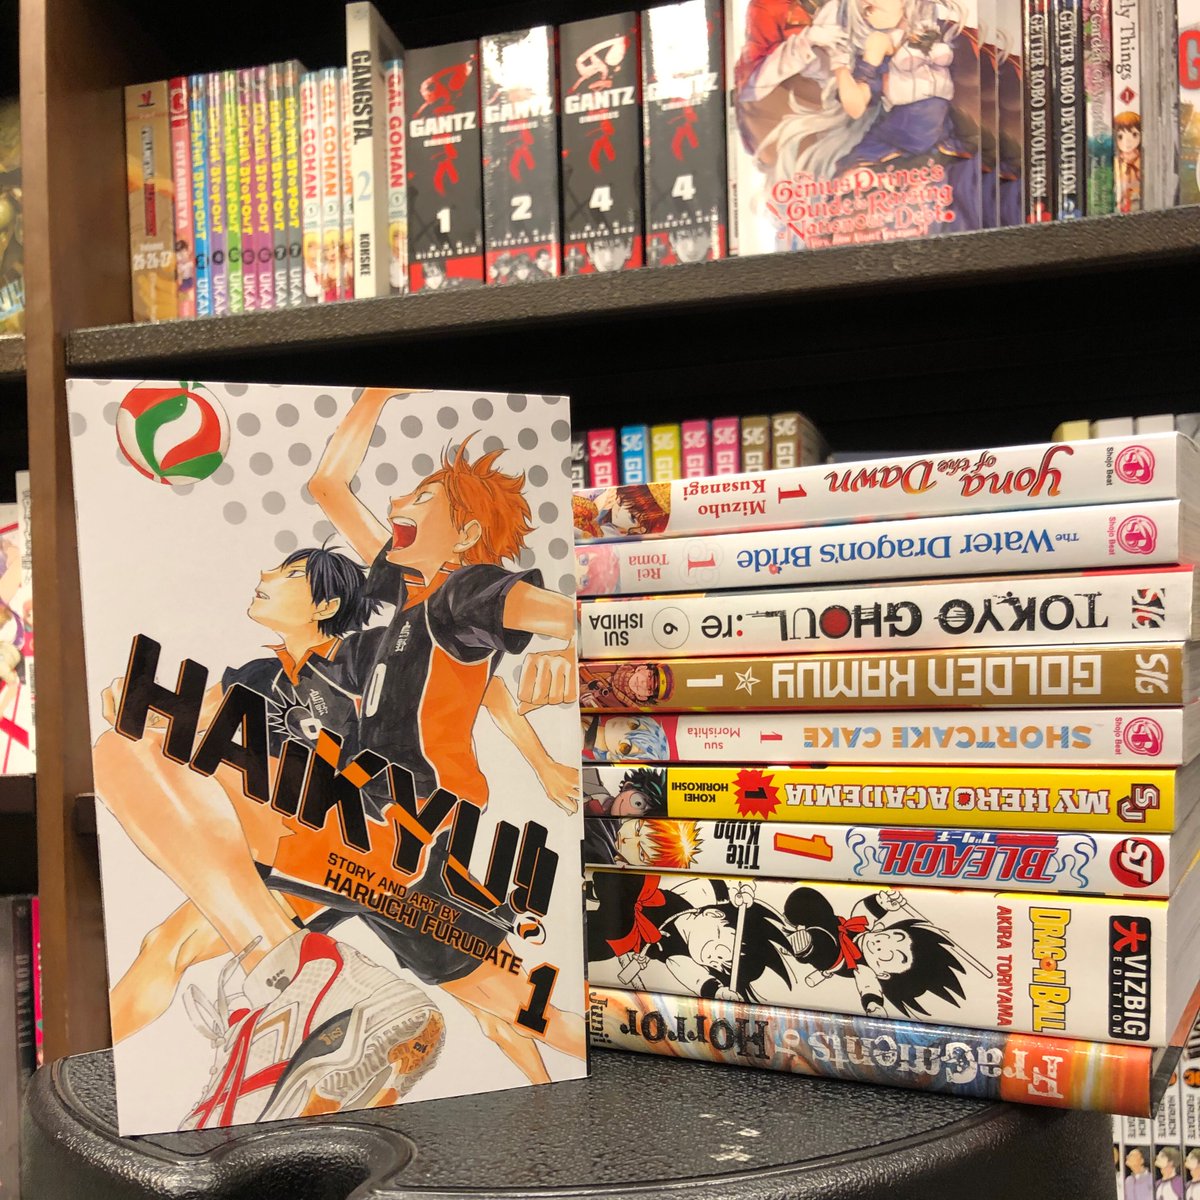 Barnes Noble Viz Manga Is On Sale Starting Today All Our Viz Manga Is Buy 2 Get One Free Mangamania Manga Vizmanga Readmanga Livemanga Mangalife T Co 2qcxchk2uq